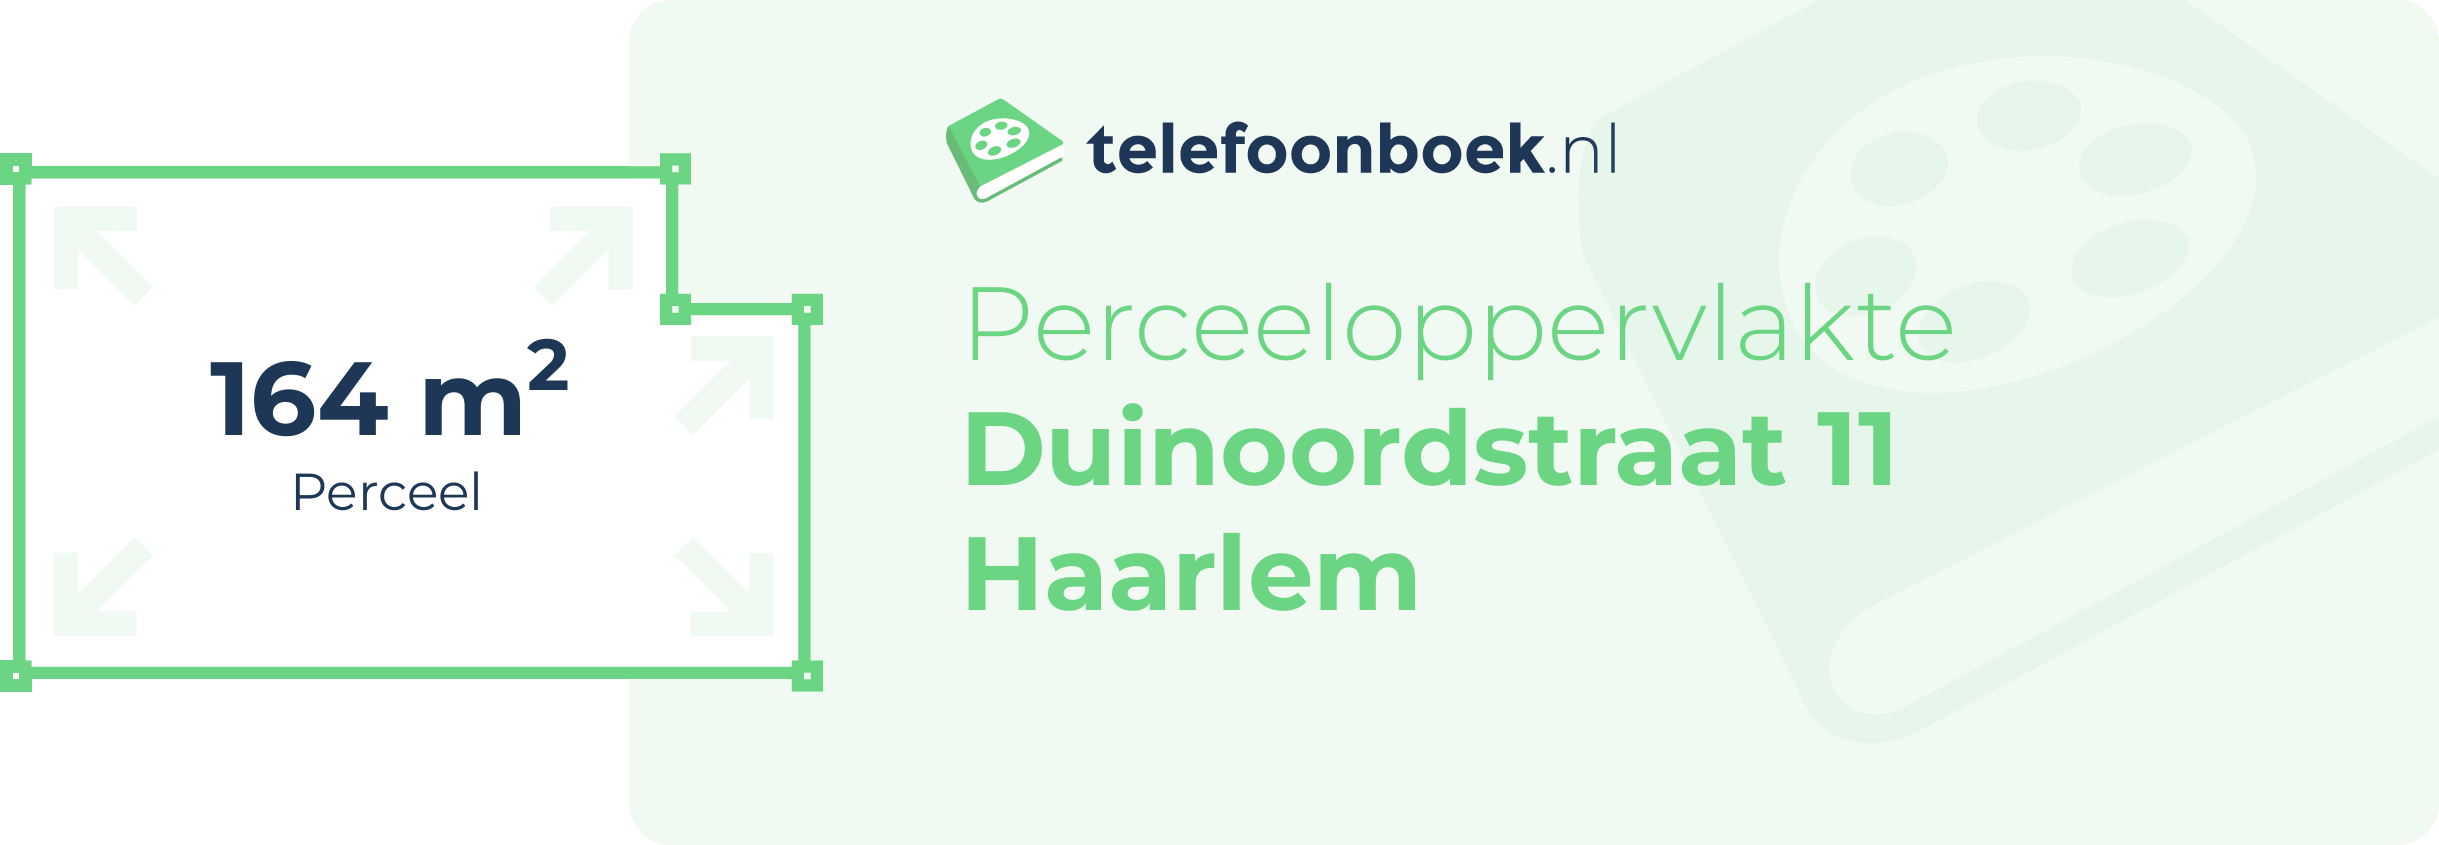 Perceeloppervlakte Duinoordstraat 11 Haarlem